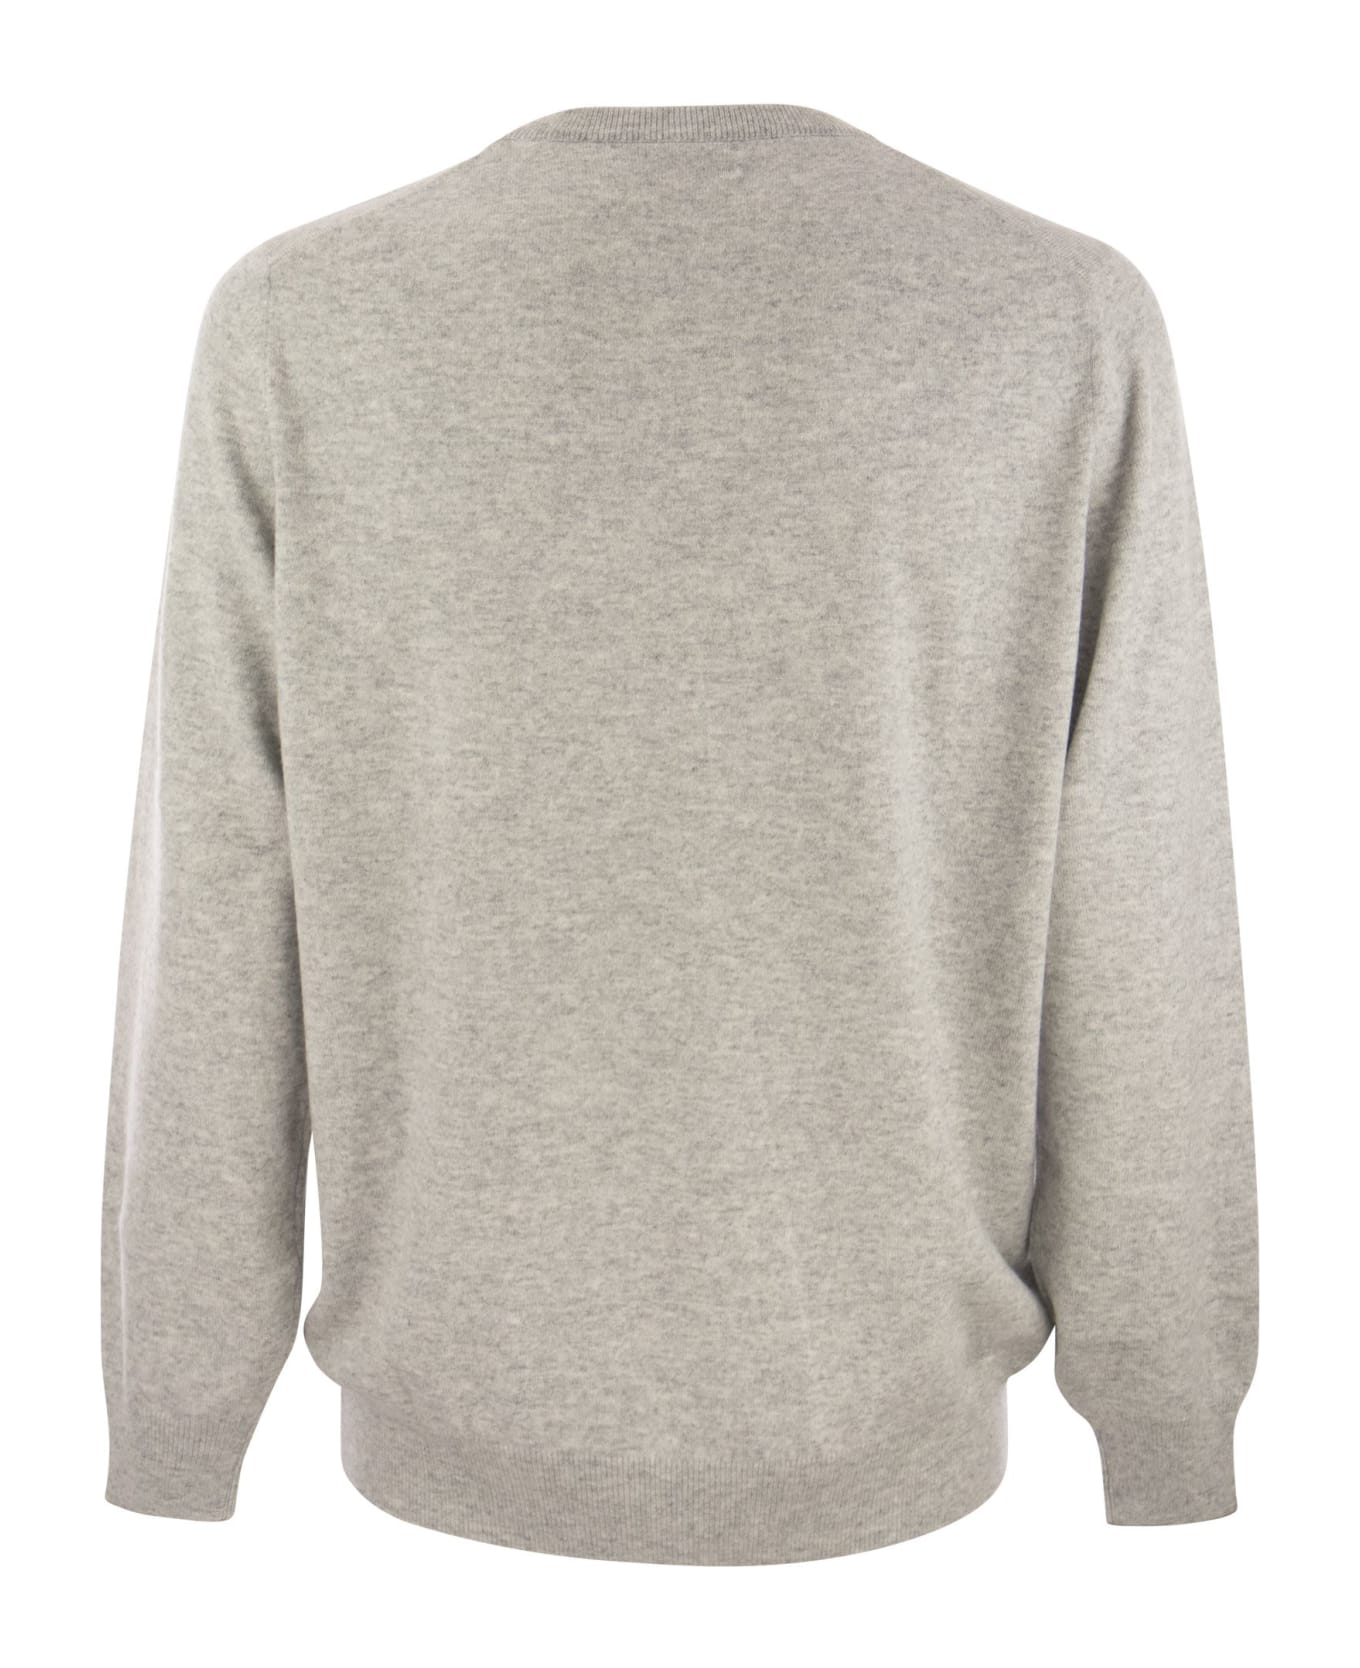 Brunello Cucinelli Pure Cashmere Crew-neck Sweater - Grey